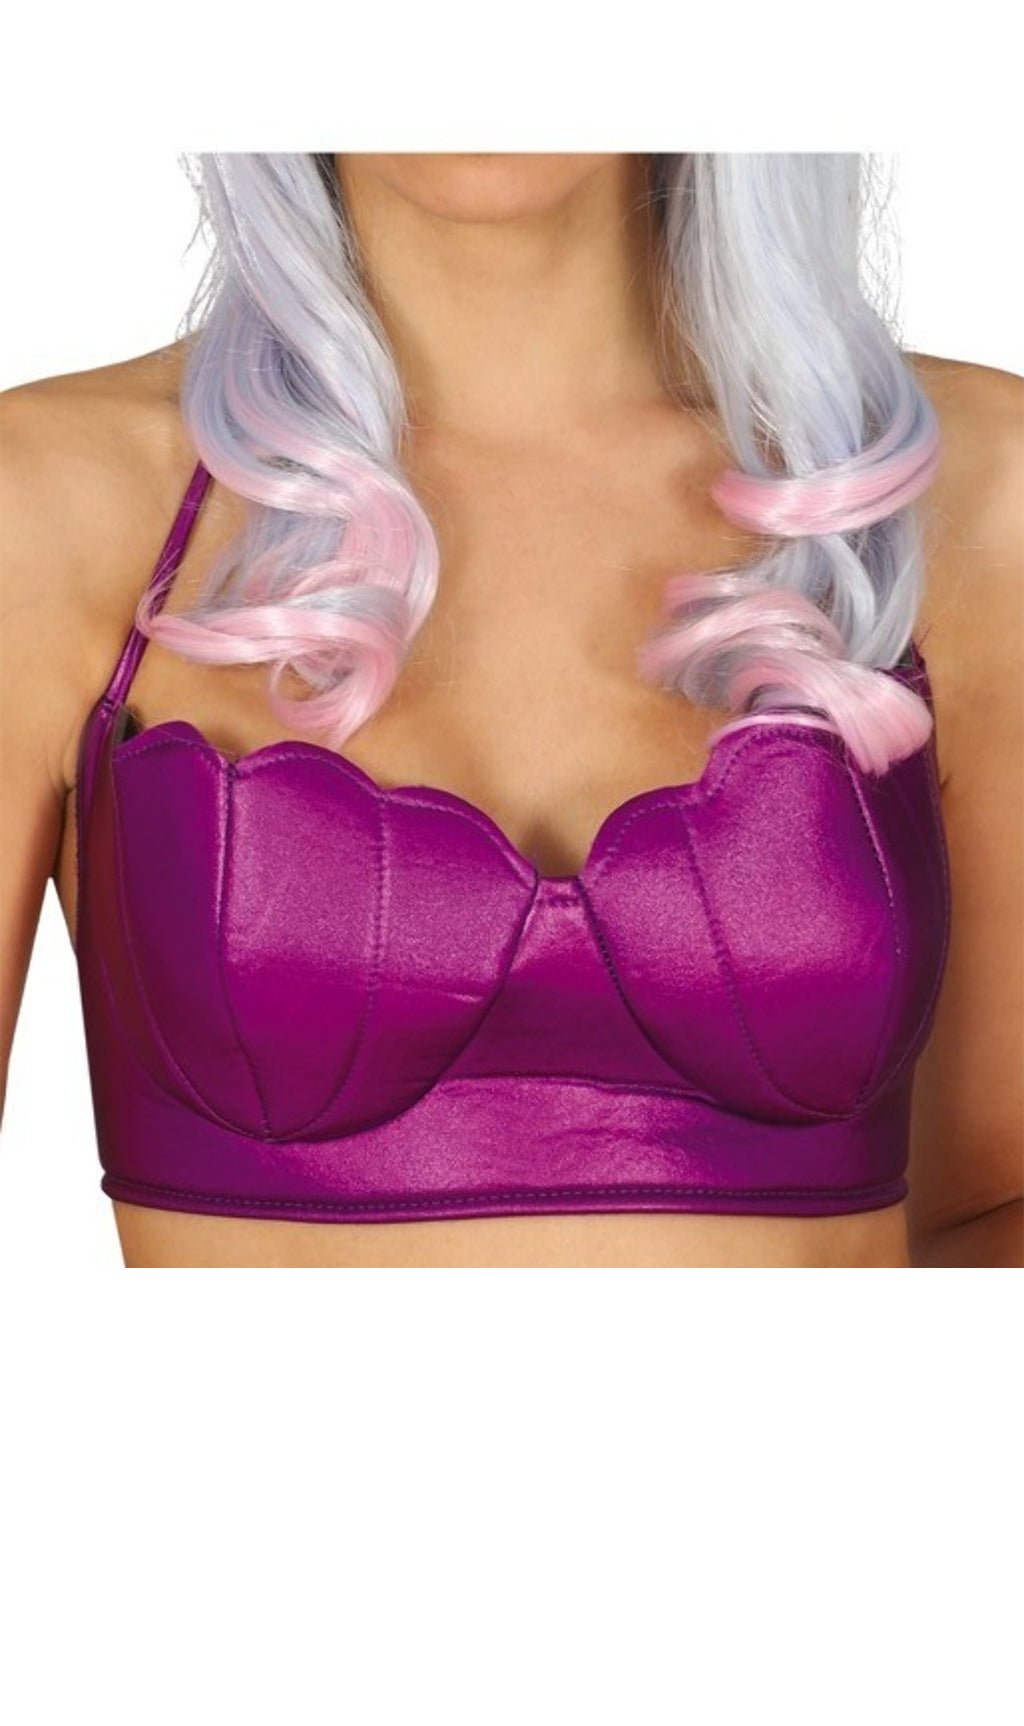 Las mejores ofertas en Disfraces Púrpura Sirena